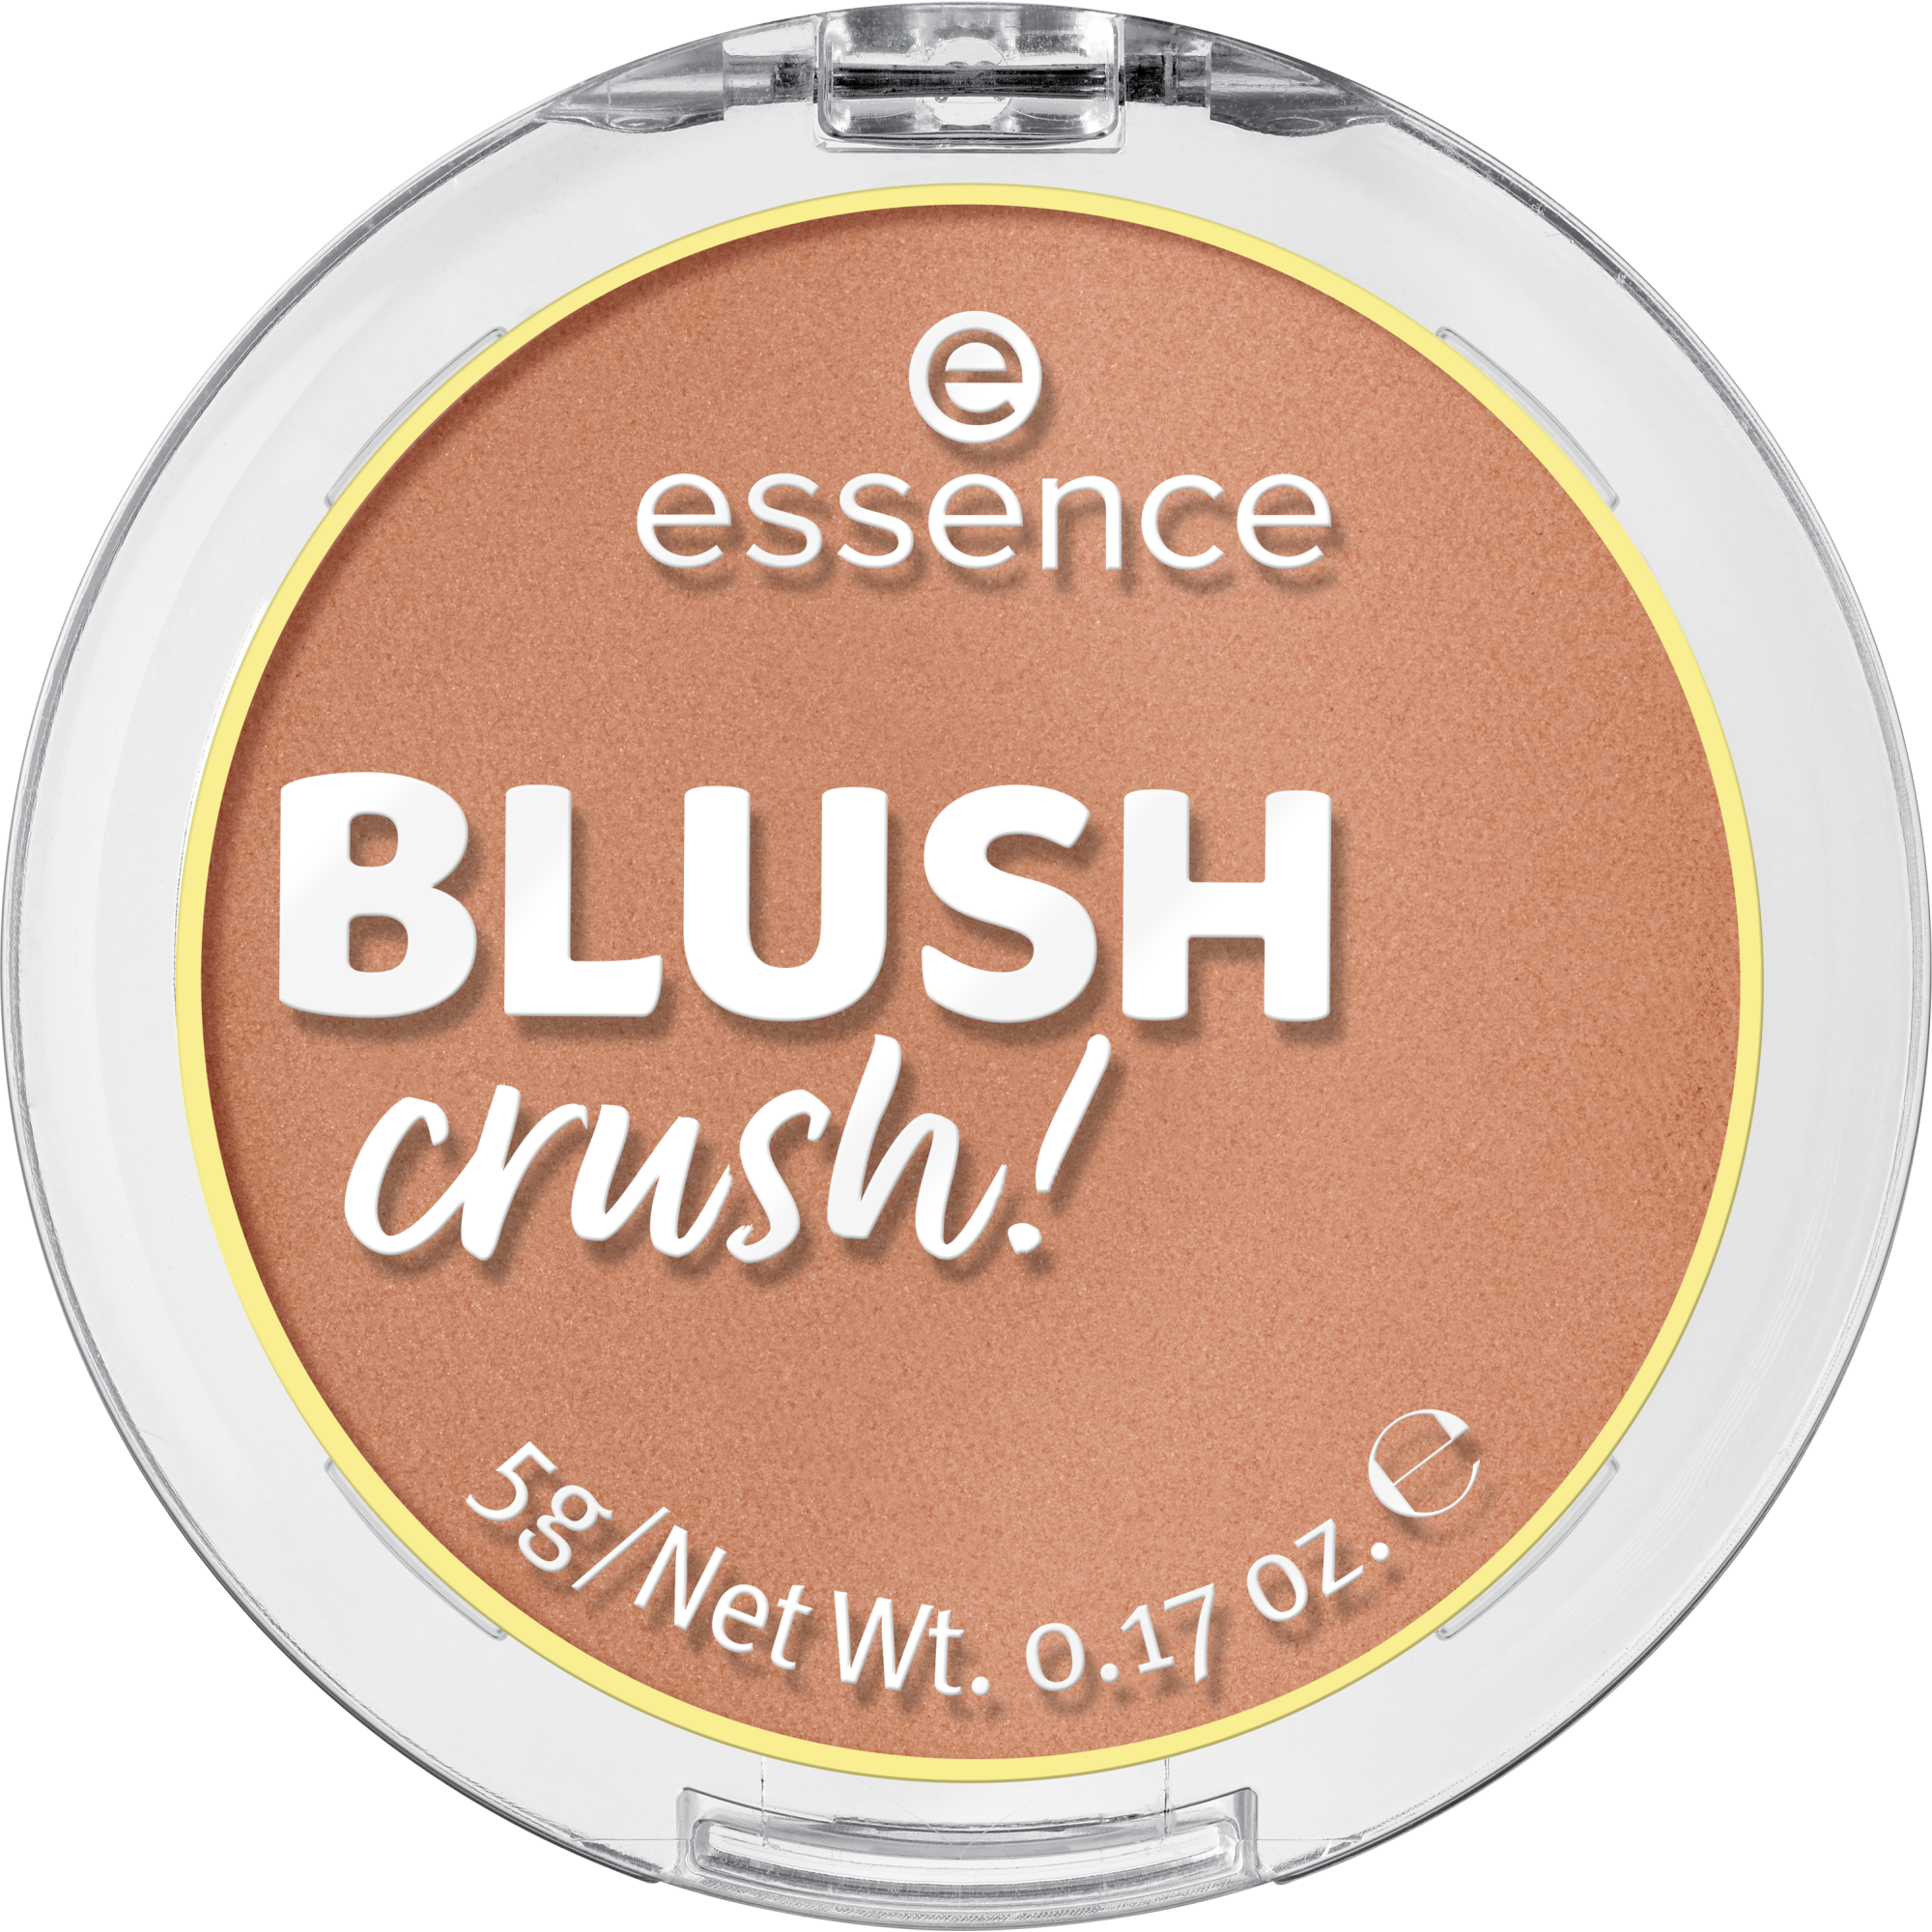 ¡BLUSH crush!